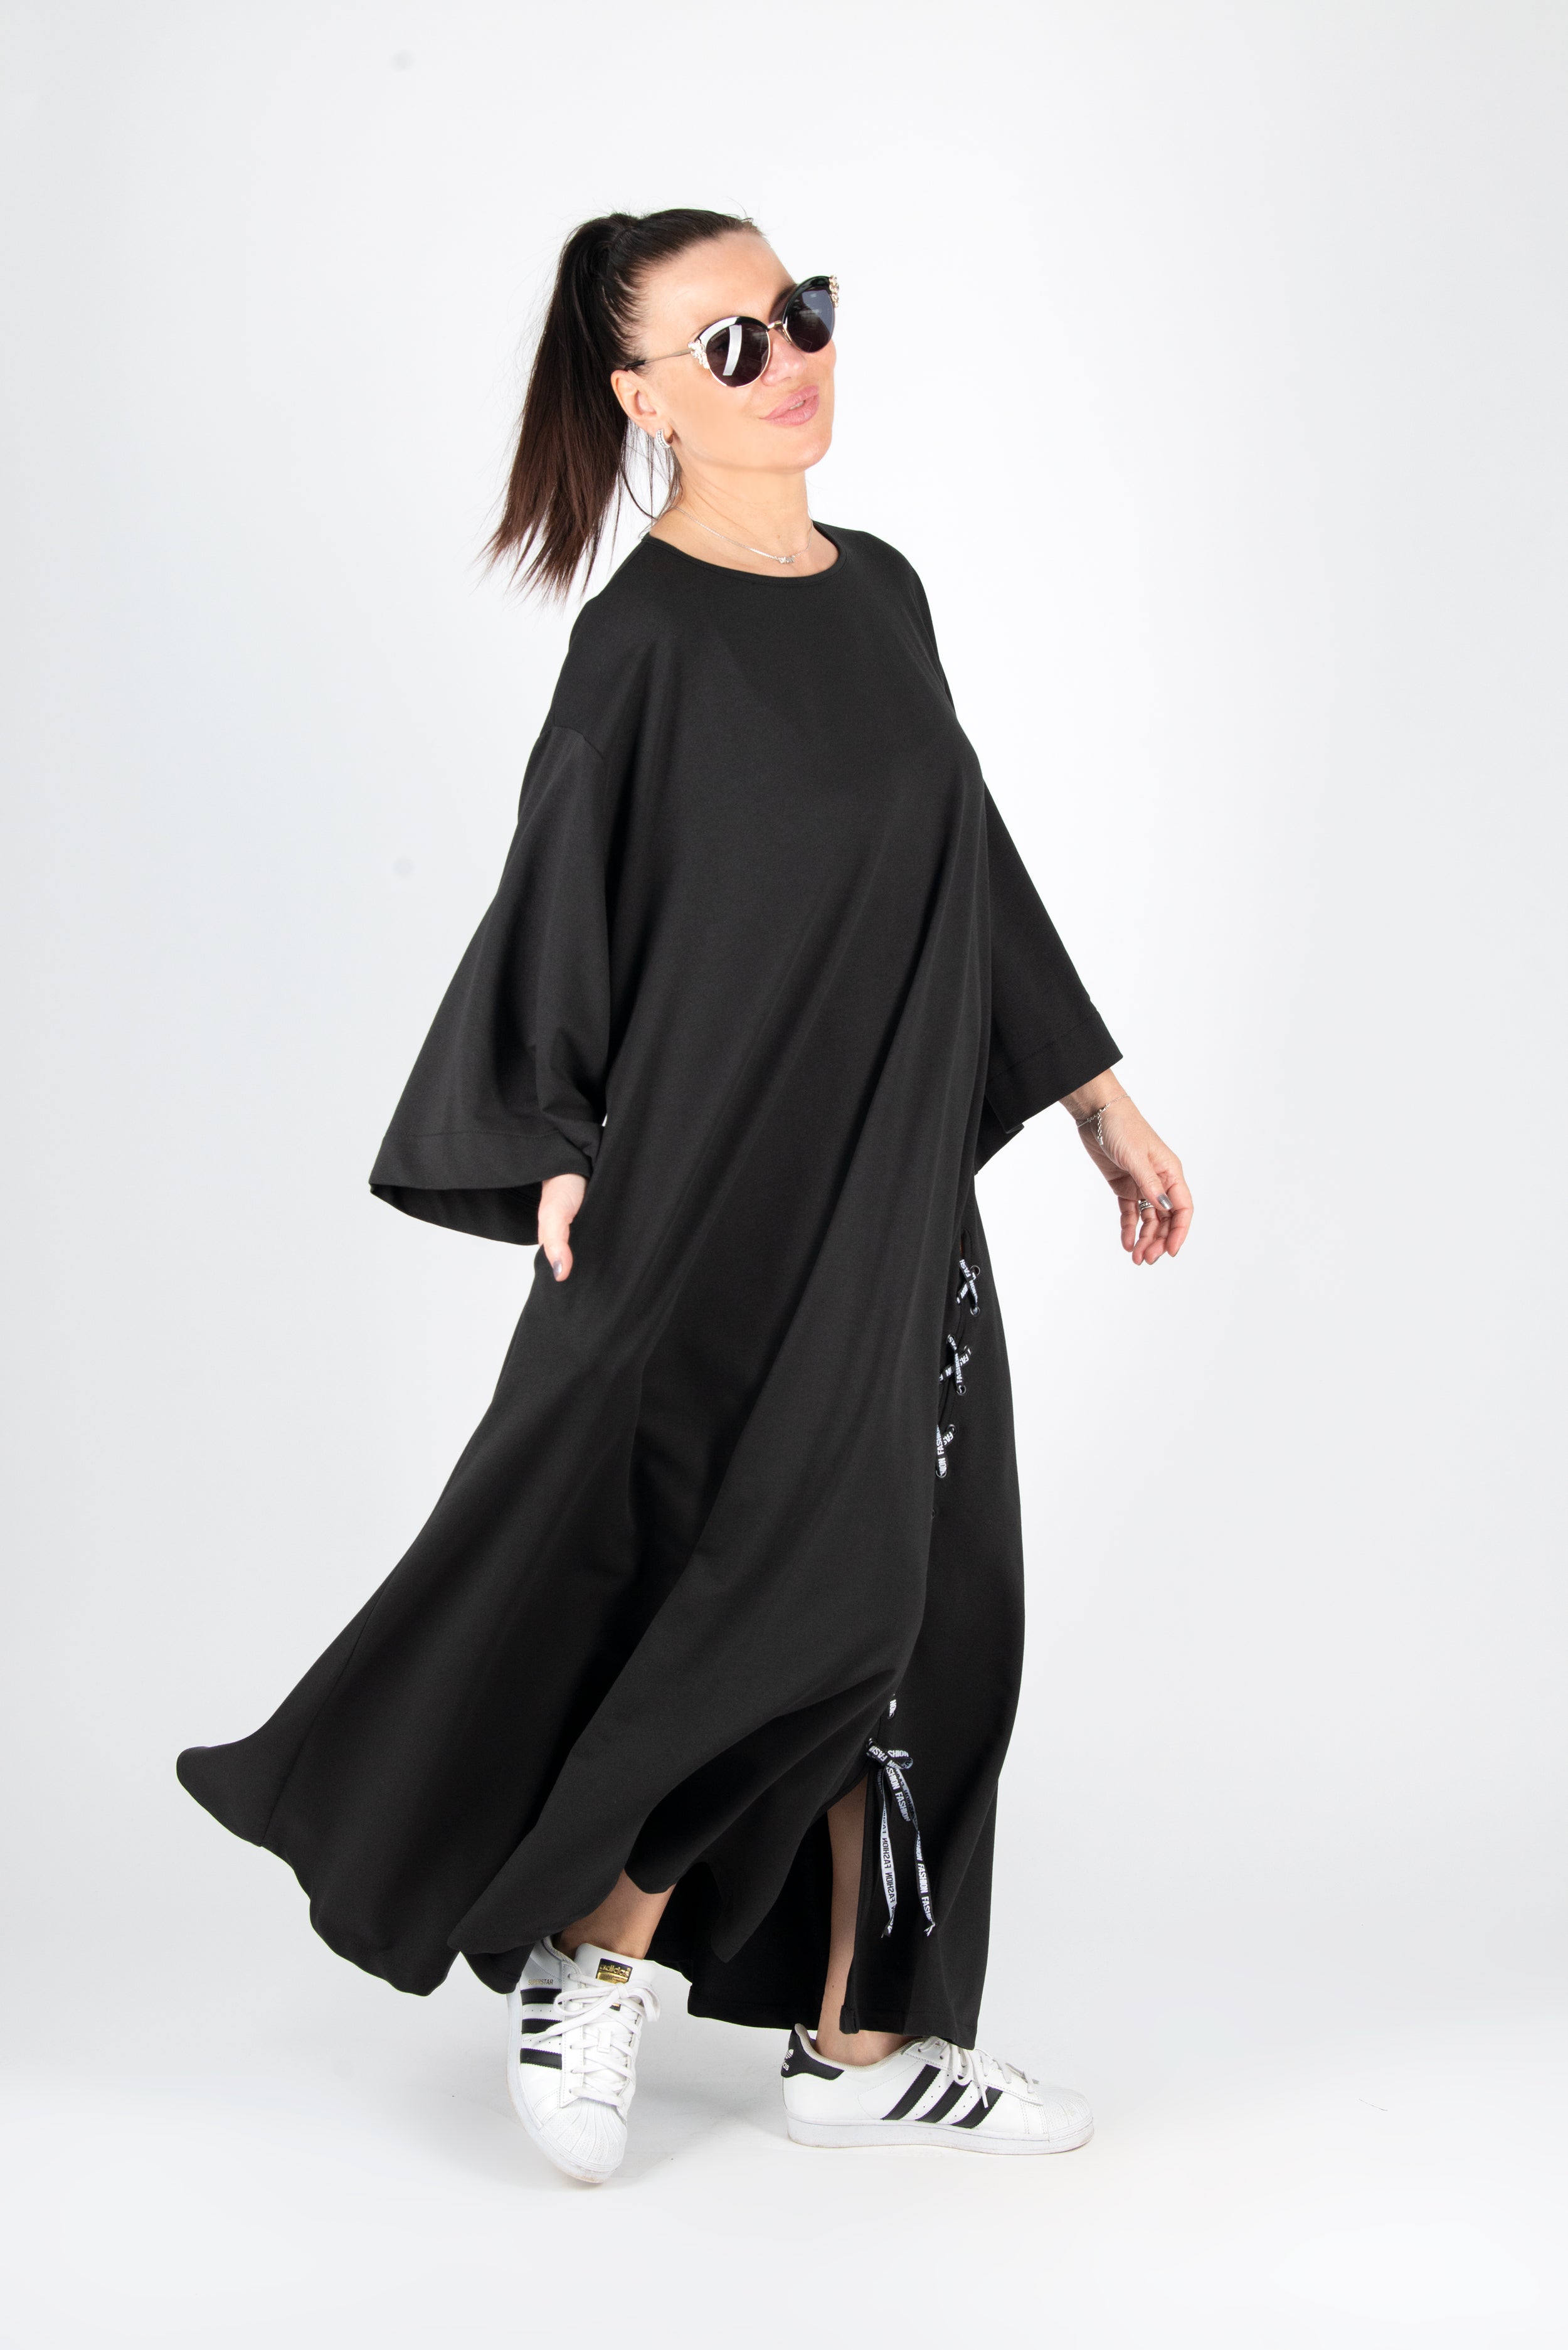 Black Long Cotton dress by EUG Fashion